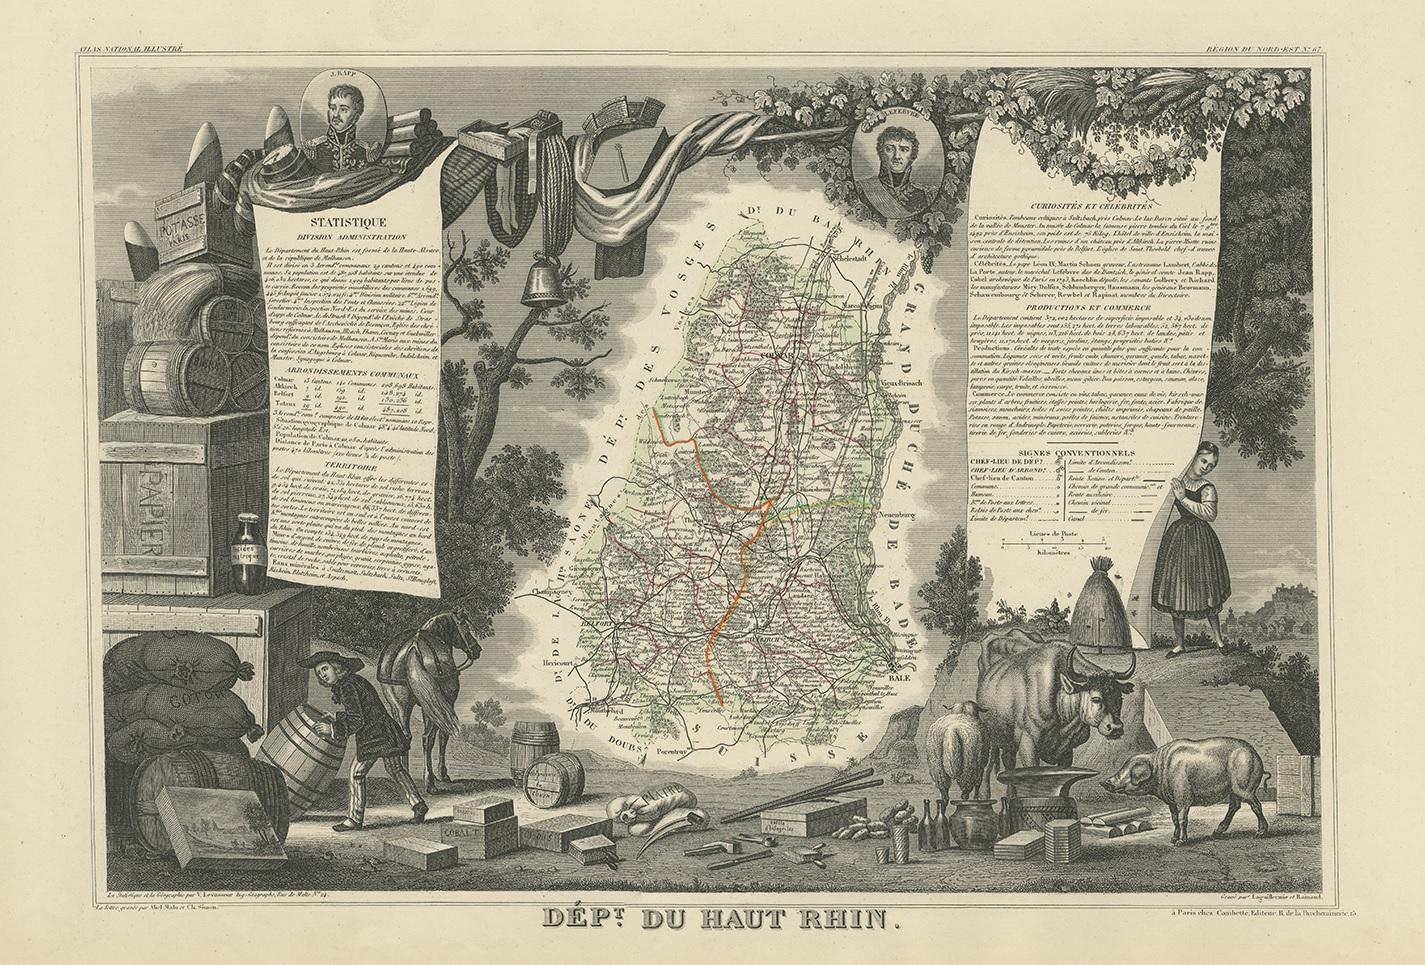 Antike Karte mit dem Titel 'Dépt. du Haut Rhin'. Karte des französischen Departements Haut-Rhin, Frankreich. Dieses bergige Gebiet gehört zur Weinregion Elsass und ist bekannt für die Produktion von Pinot Noir und Pinot Gris. Die Karte ist von